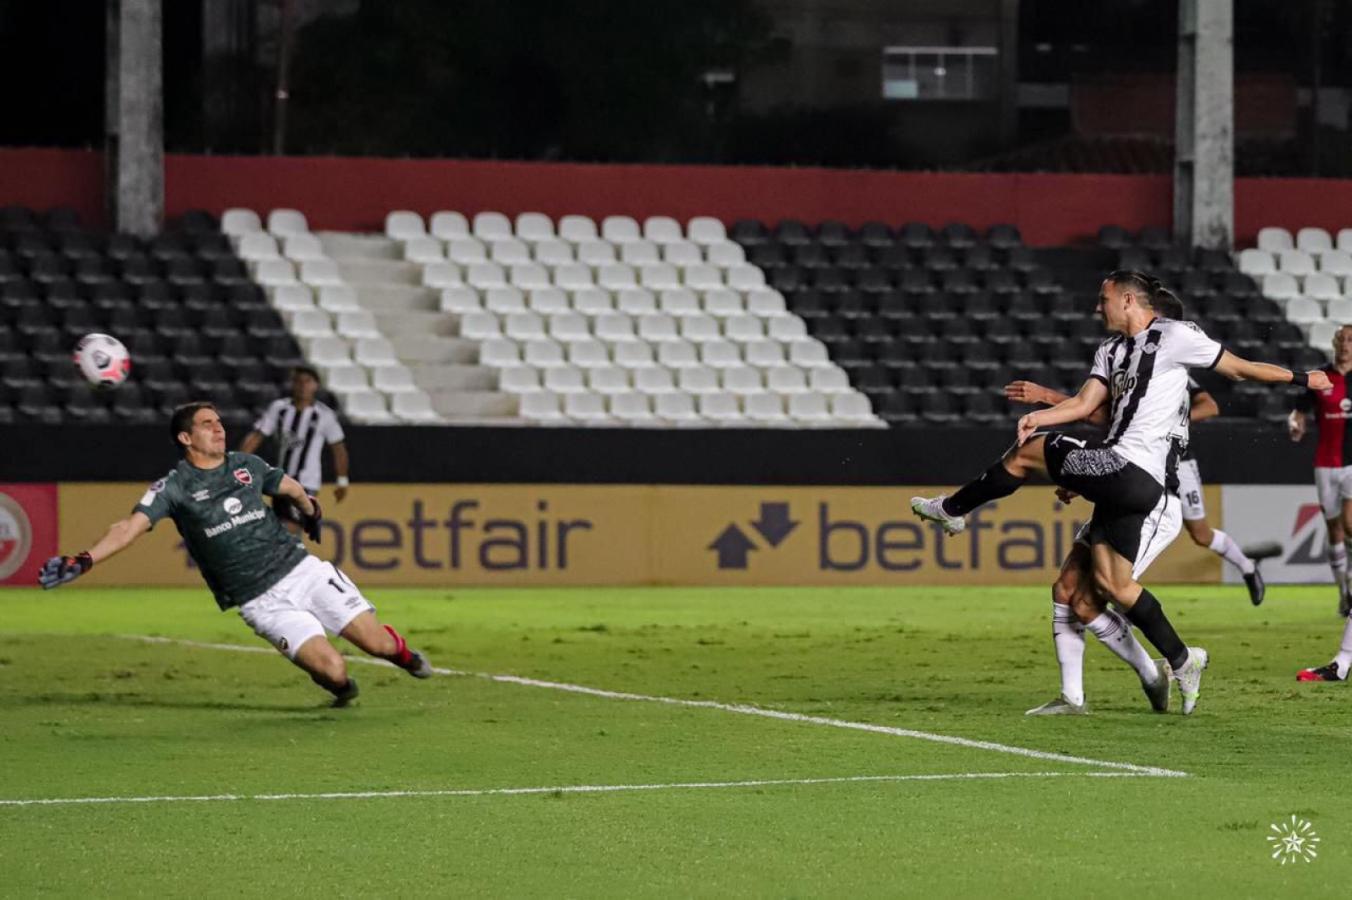 Imagen Ferreira acaba de sacar el disparo que le daría los tres puntos a Libertad. Foto: @Libertad_Guma